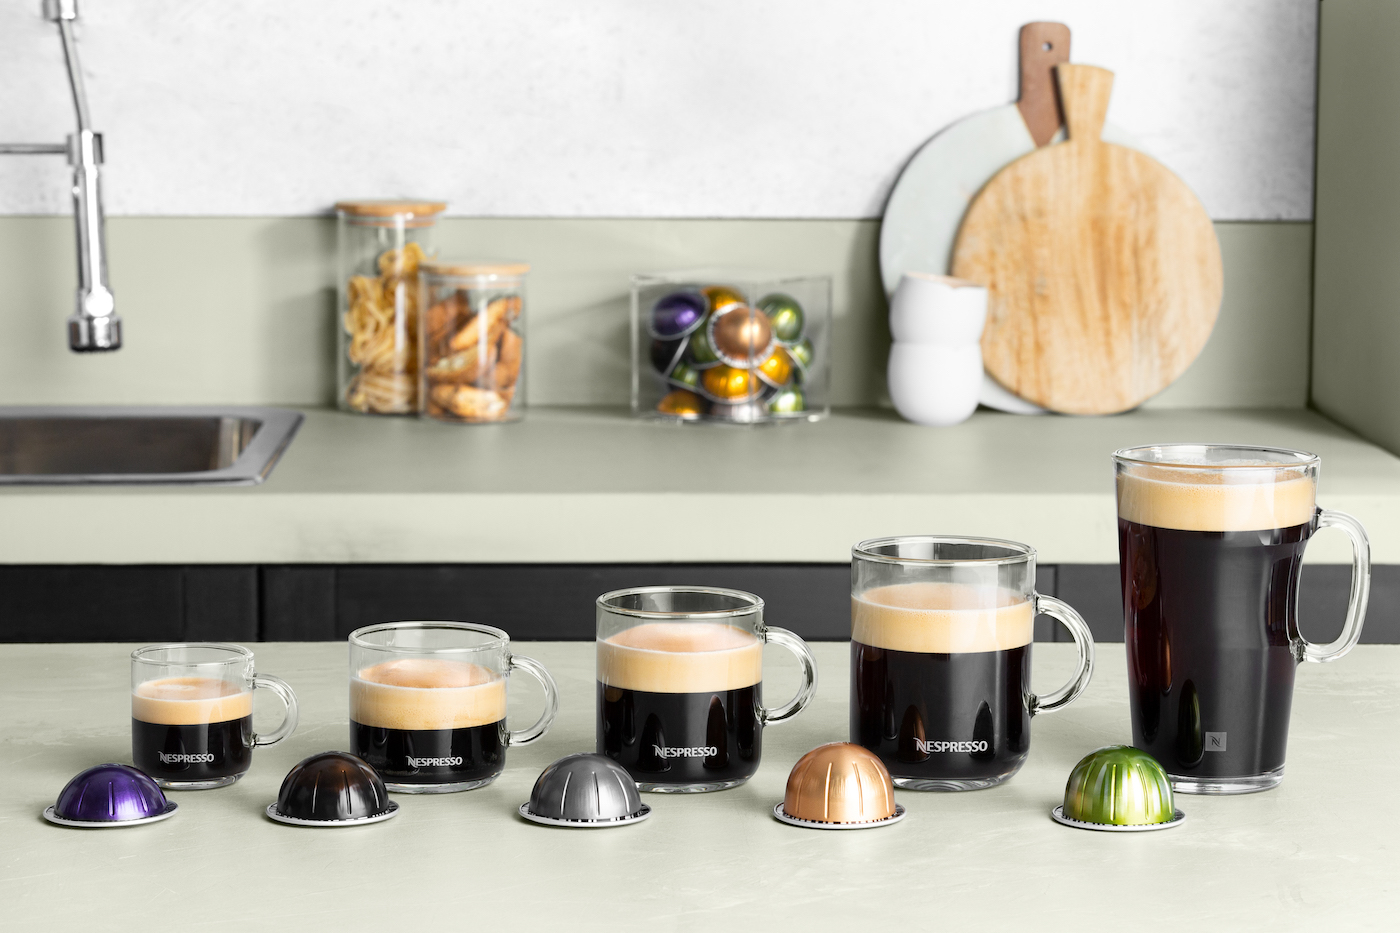 ironie Adviseur Hoofdkwartier Nespresso lanceert nieuwe koffiemachine die 5 soorten koffies kan zetten